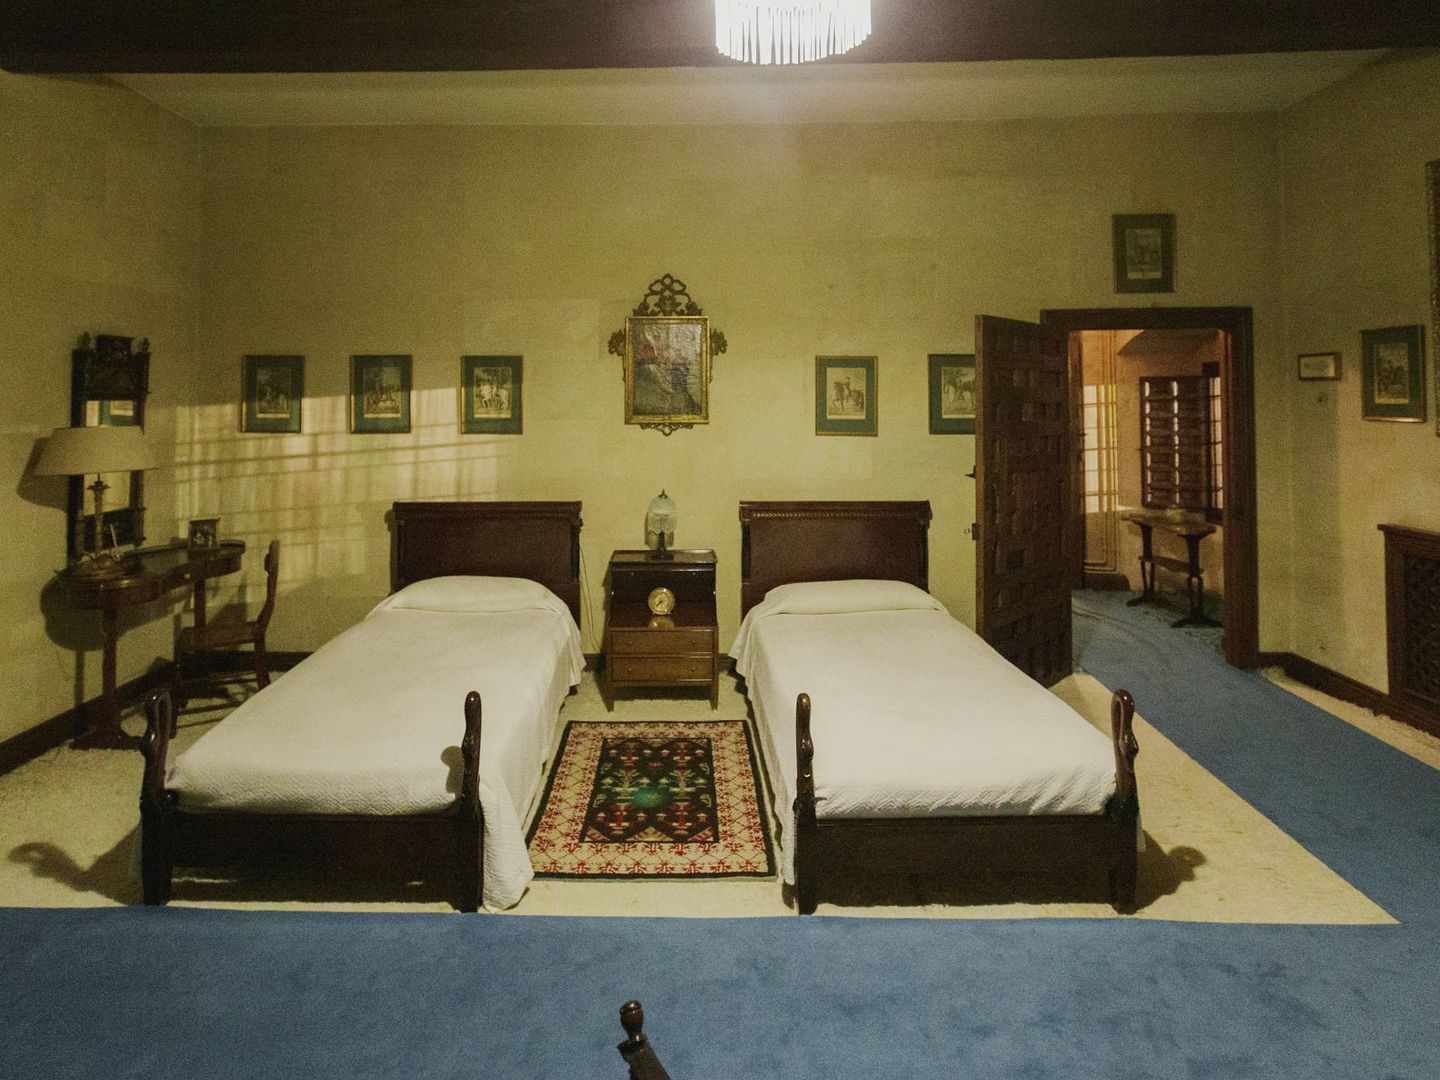 Dormitorio en el que se alojaron don Juan Carlos y Alfonso XII. (Cortesía)